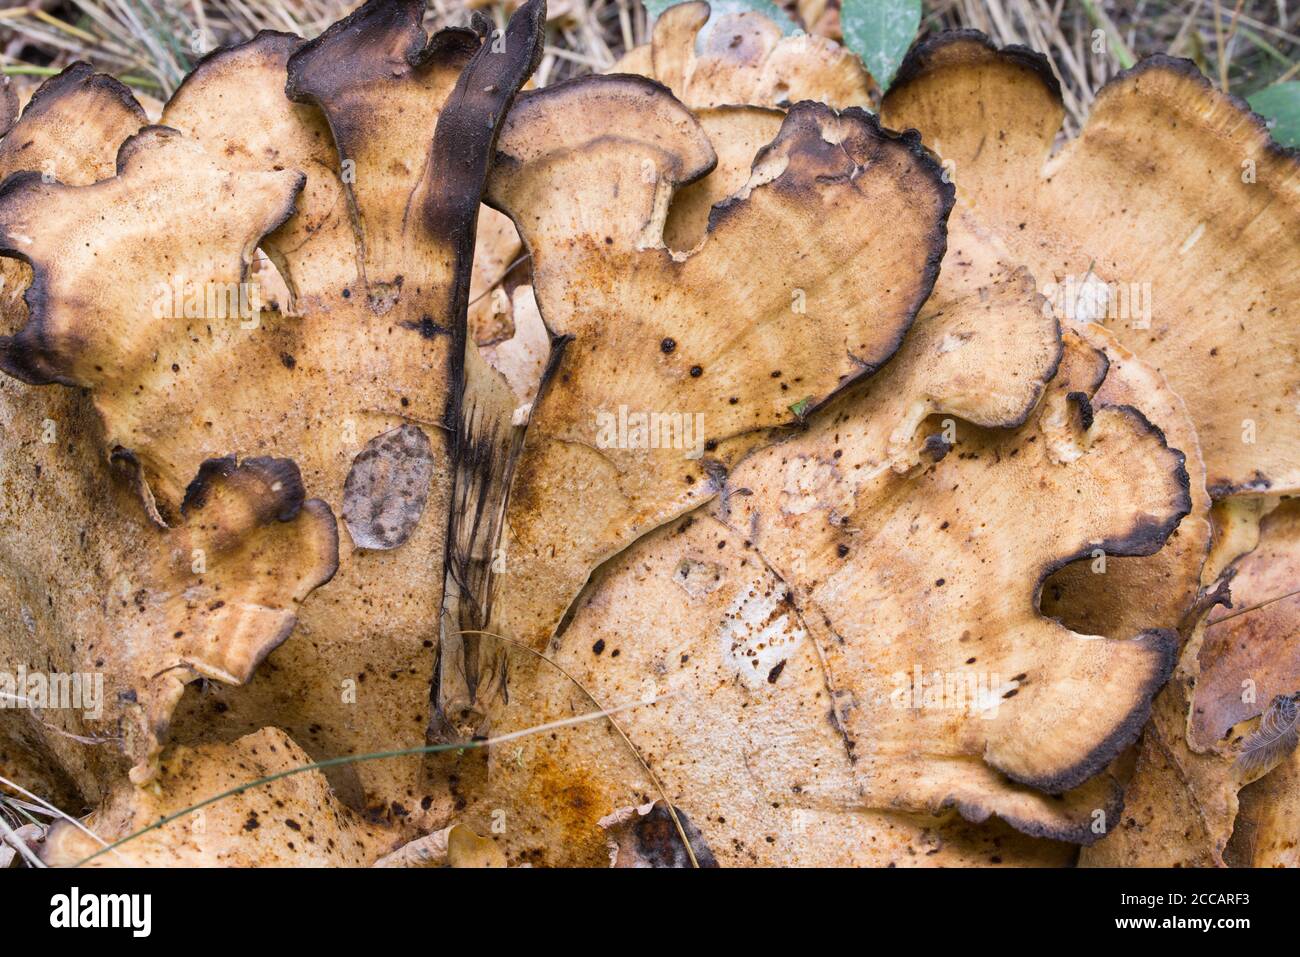 Meripilus giganteus, fuoco selettivo di closeup di funghi di polipo gigante Foto Stock